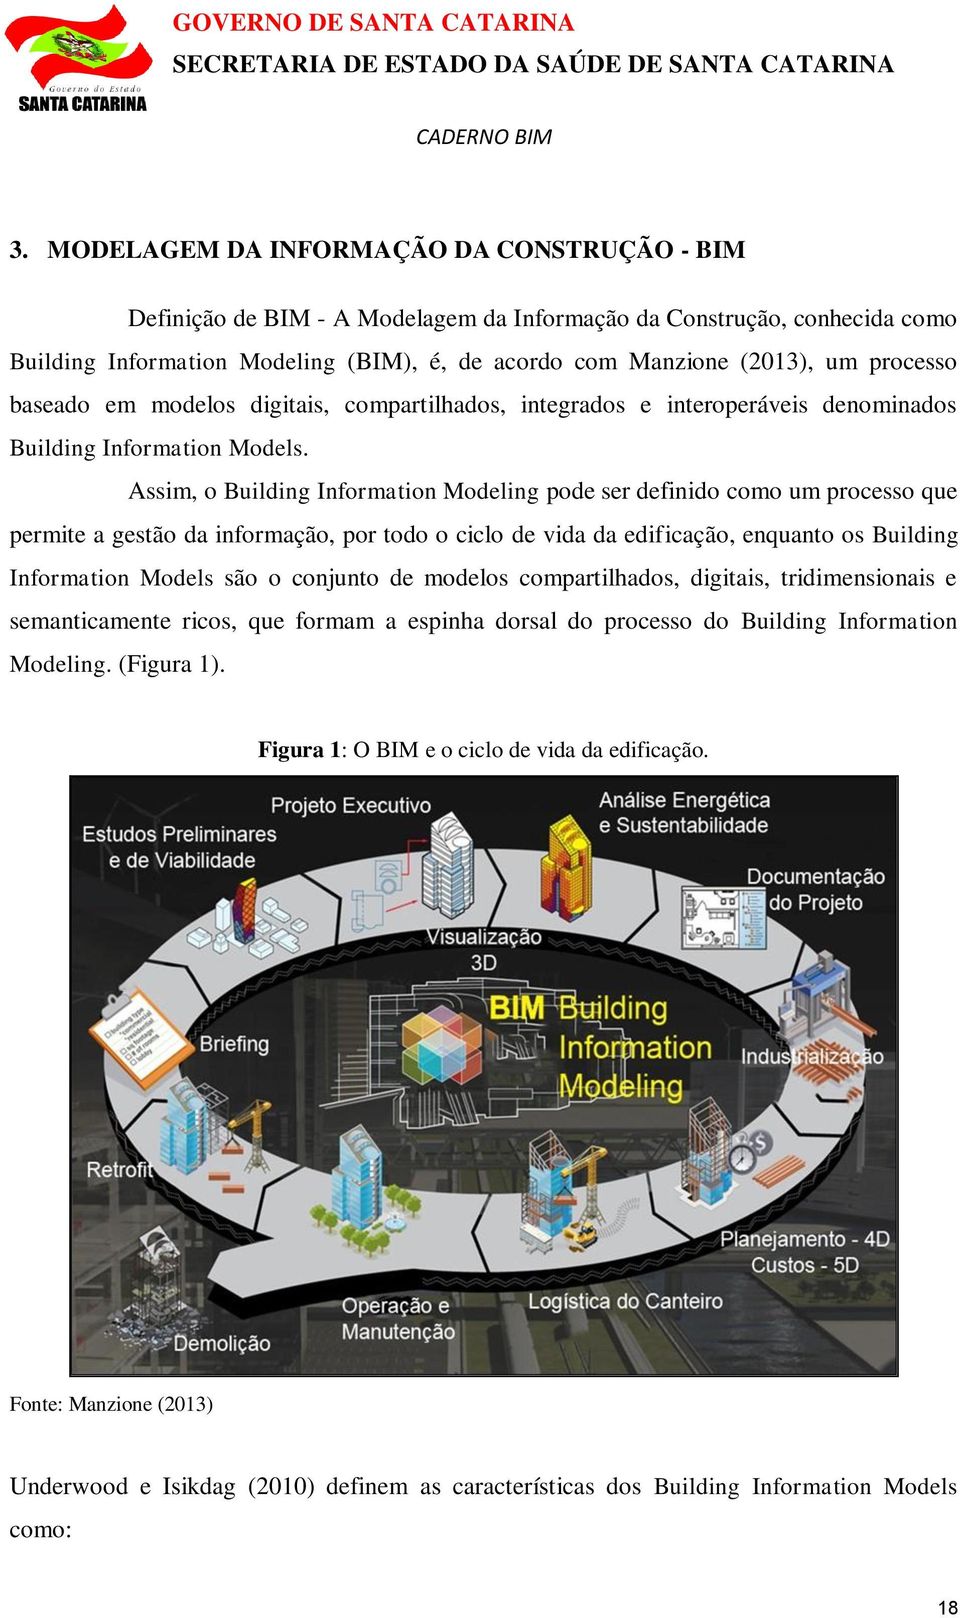 Assim, o Building Information Modeling pode ser definido como um processo que permite a gestão da informação, por todo o ciclo de vida da edificação, enquanto os Building Information Models são o